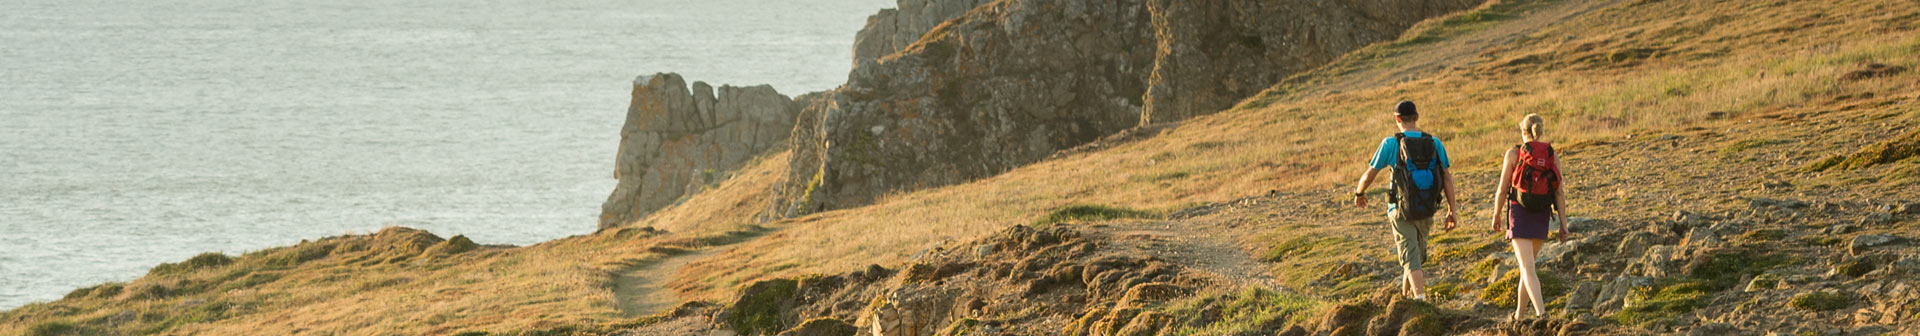 La Pointe du Raz Grand Site de France, patrimoine naturel breton, point de vue et randonnées